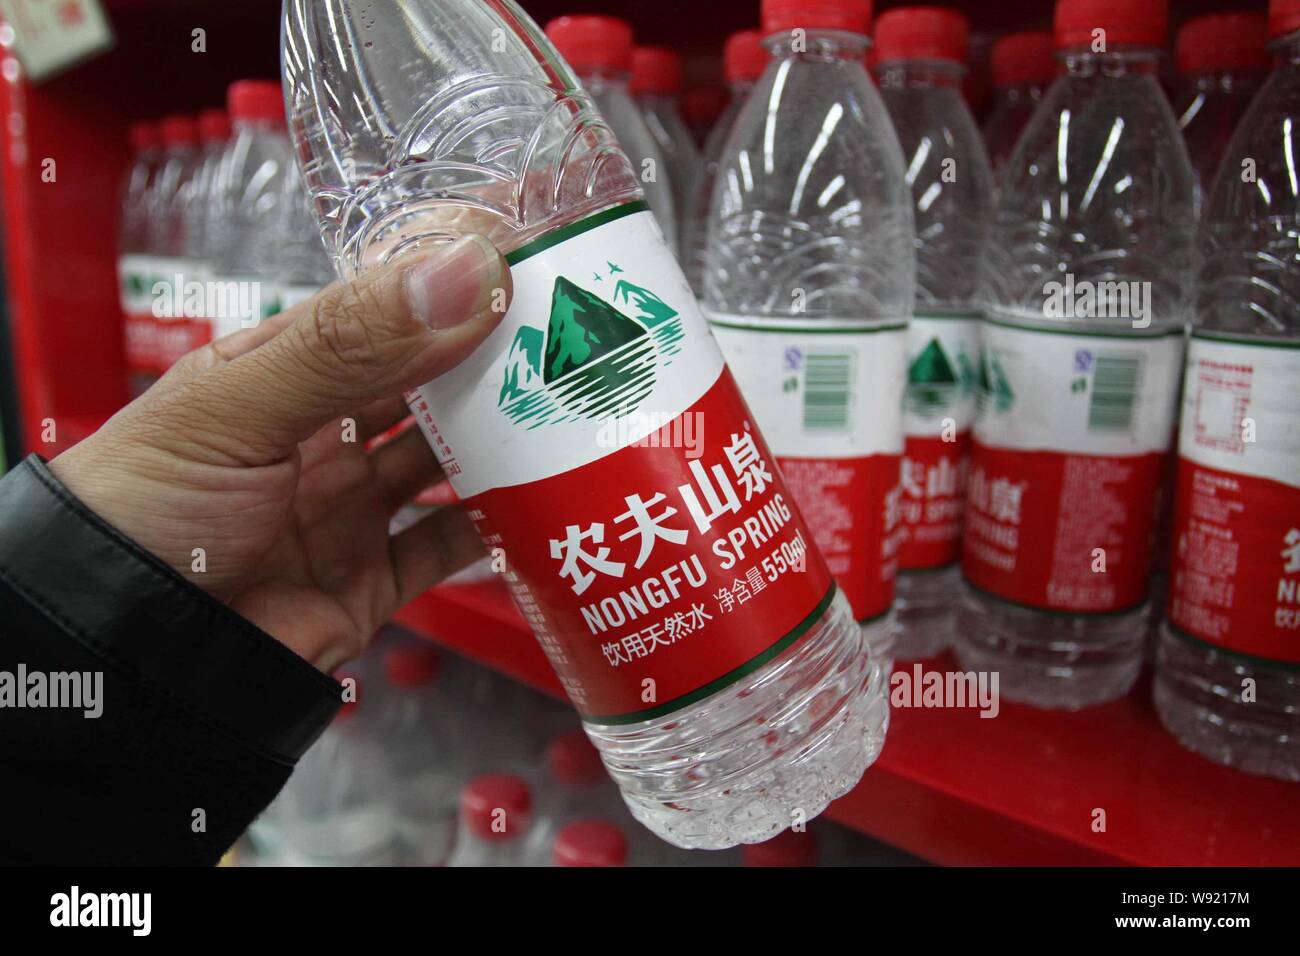 ---- Ein chinesischer Kunde kauft Flaschen Nongfu Quellwasser in einem Supermarkt im Xuchang, Zentrale China Provinz Henan, 30. April 2013. Nongfu Spr Stockfoto